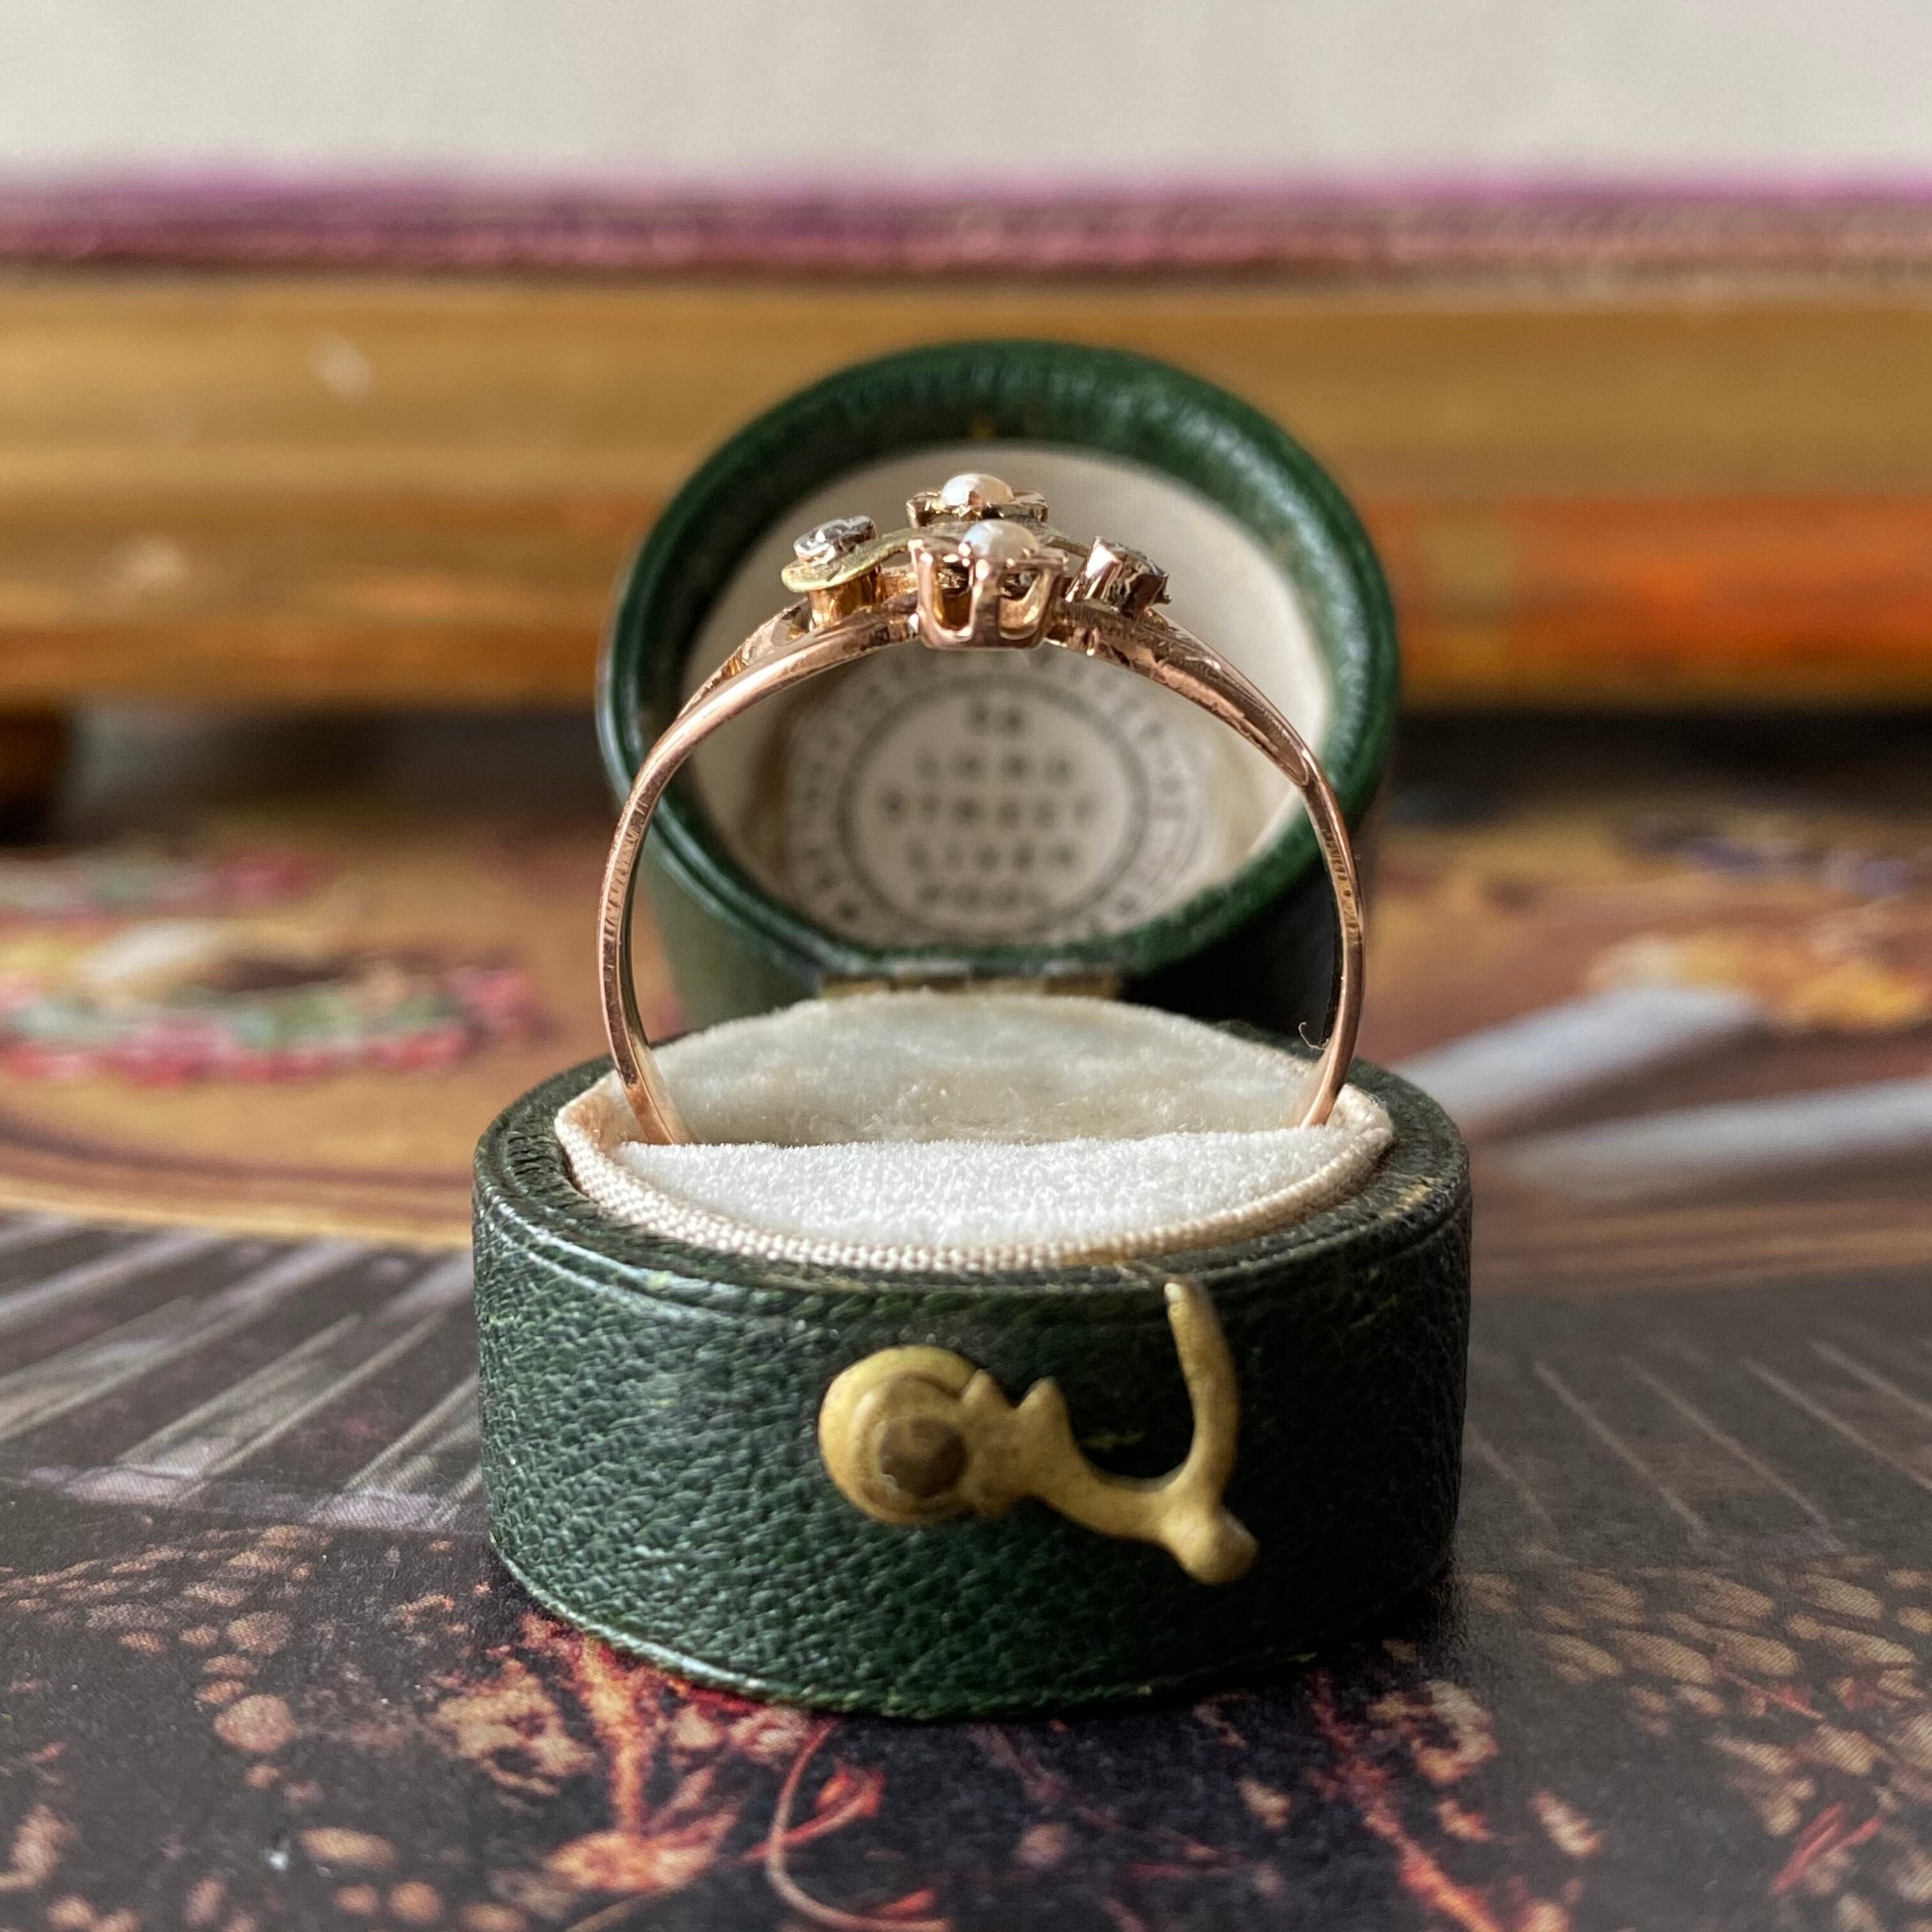 美品　フェスタリア　ビジュソフィア　K10 ハート　ゴールドリング　地金　指輪